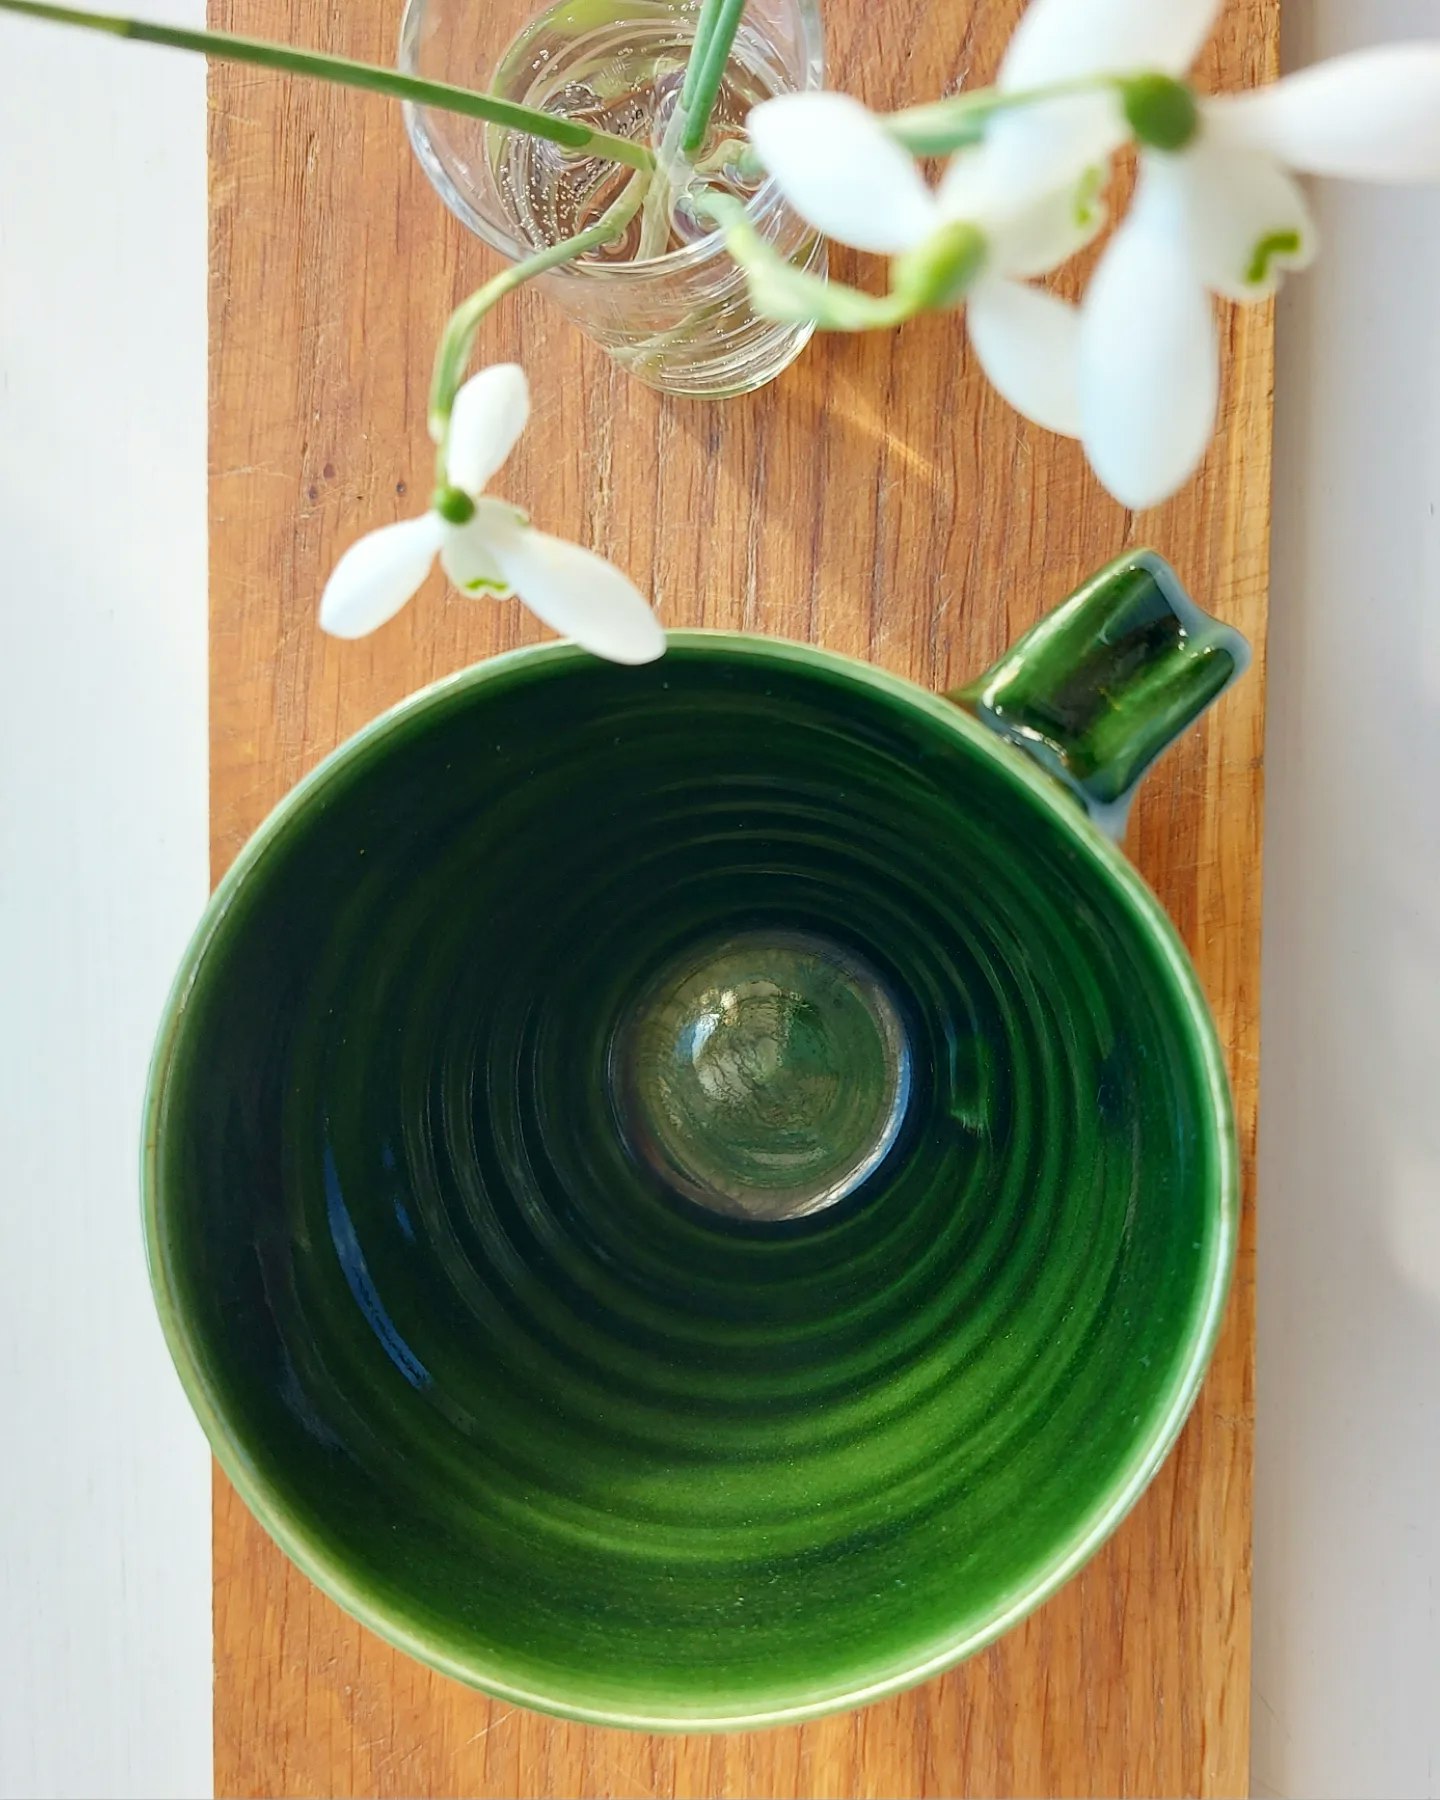 Frida Nilsson Keramik Höganäs Handgjord keramik stengods kaffekopp med öra grön skogsgrön mörkgrön mugg drejad